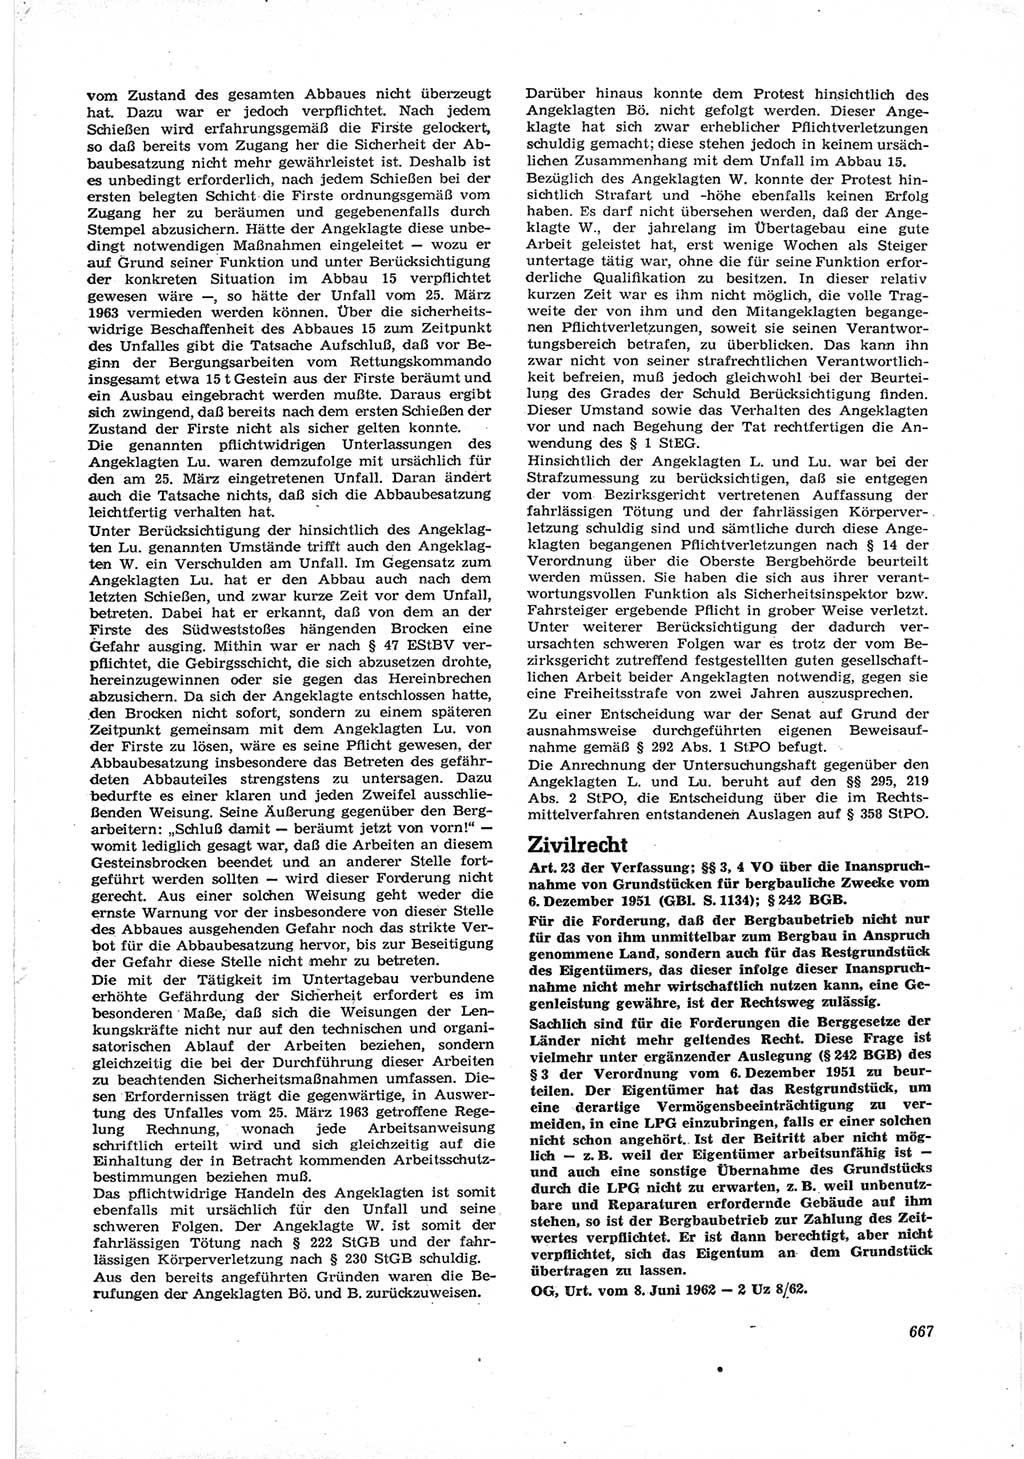 Neue Justiz (NJ), Zeitschrift für Recht und Rechtswissenschaft [Deutsche Demokratische Republik (DDR)], 17. Jahrgang 1963, Seite 667 (NJ DDR 1963, S. 667)